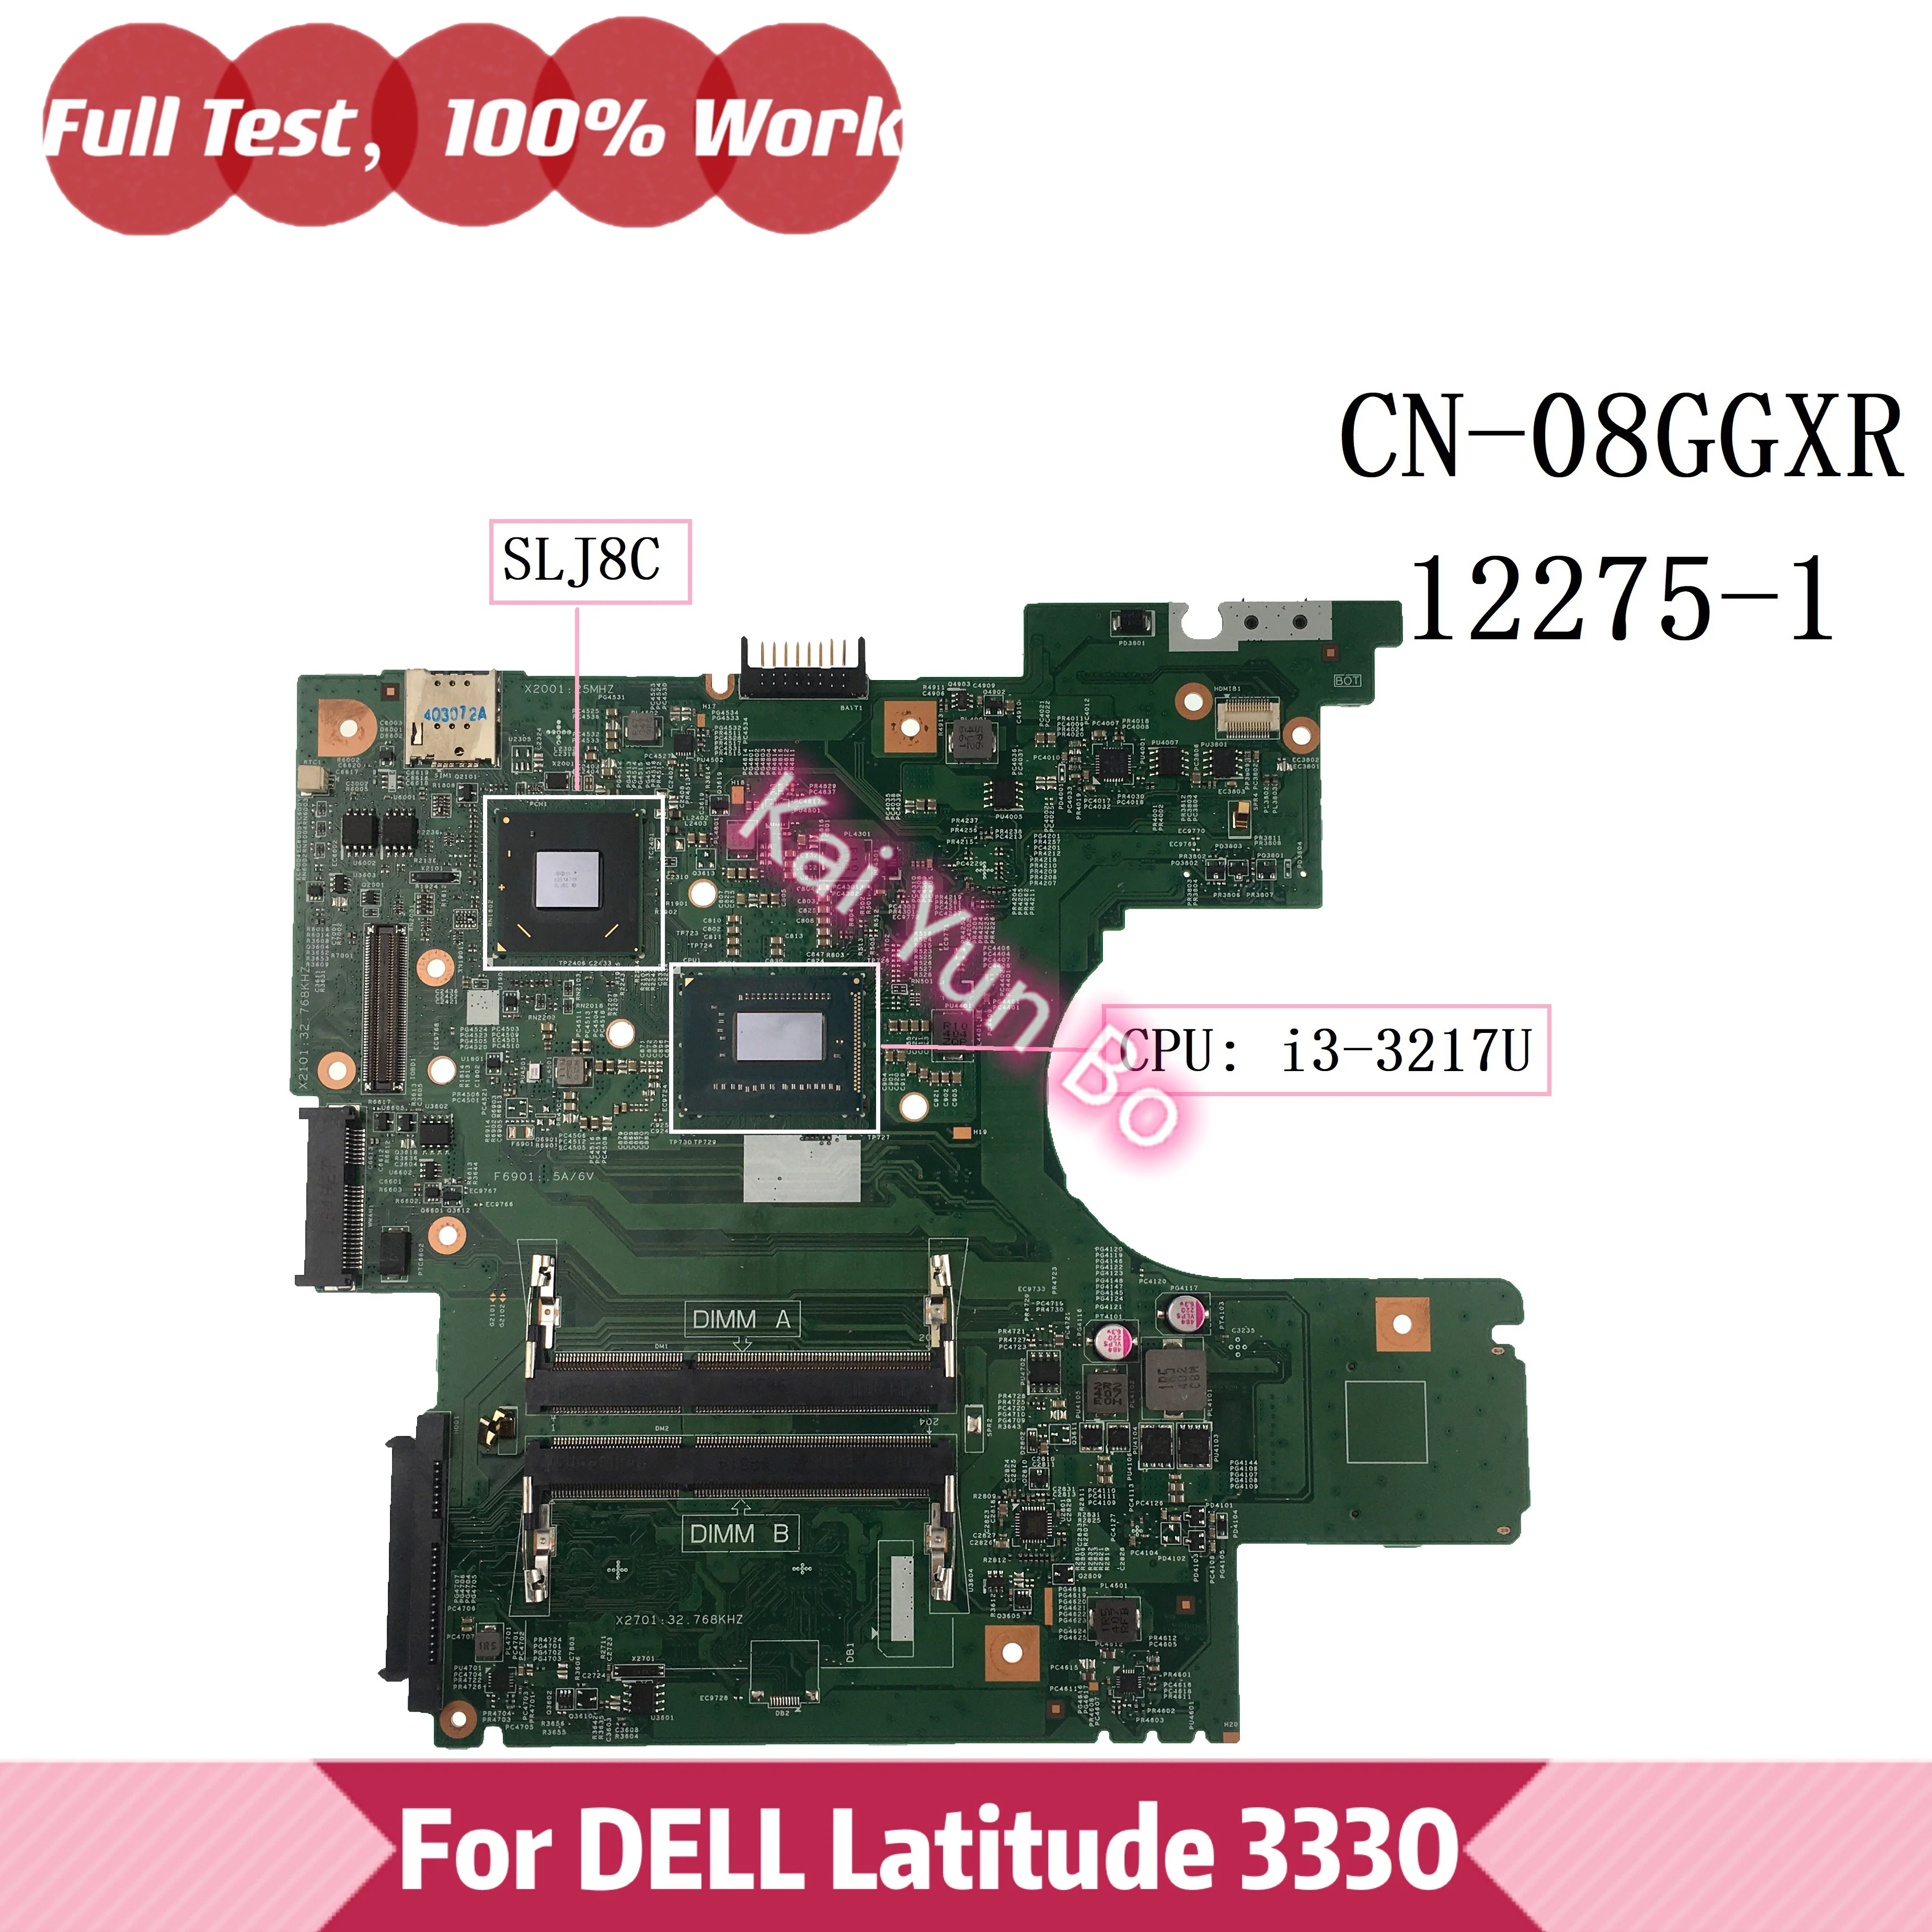 עבור Dell Latitude 3330 Vostro 131 V131 מחשב נייד לוח אם 08GGXR 8GGXR CN-0W29HP W29HP 0W29HP 02D6MM 2D6MM 12275-1 W 1007U i3 i5 - 5